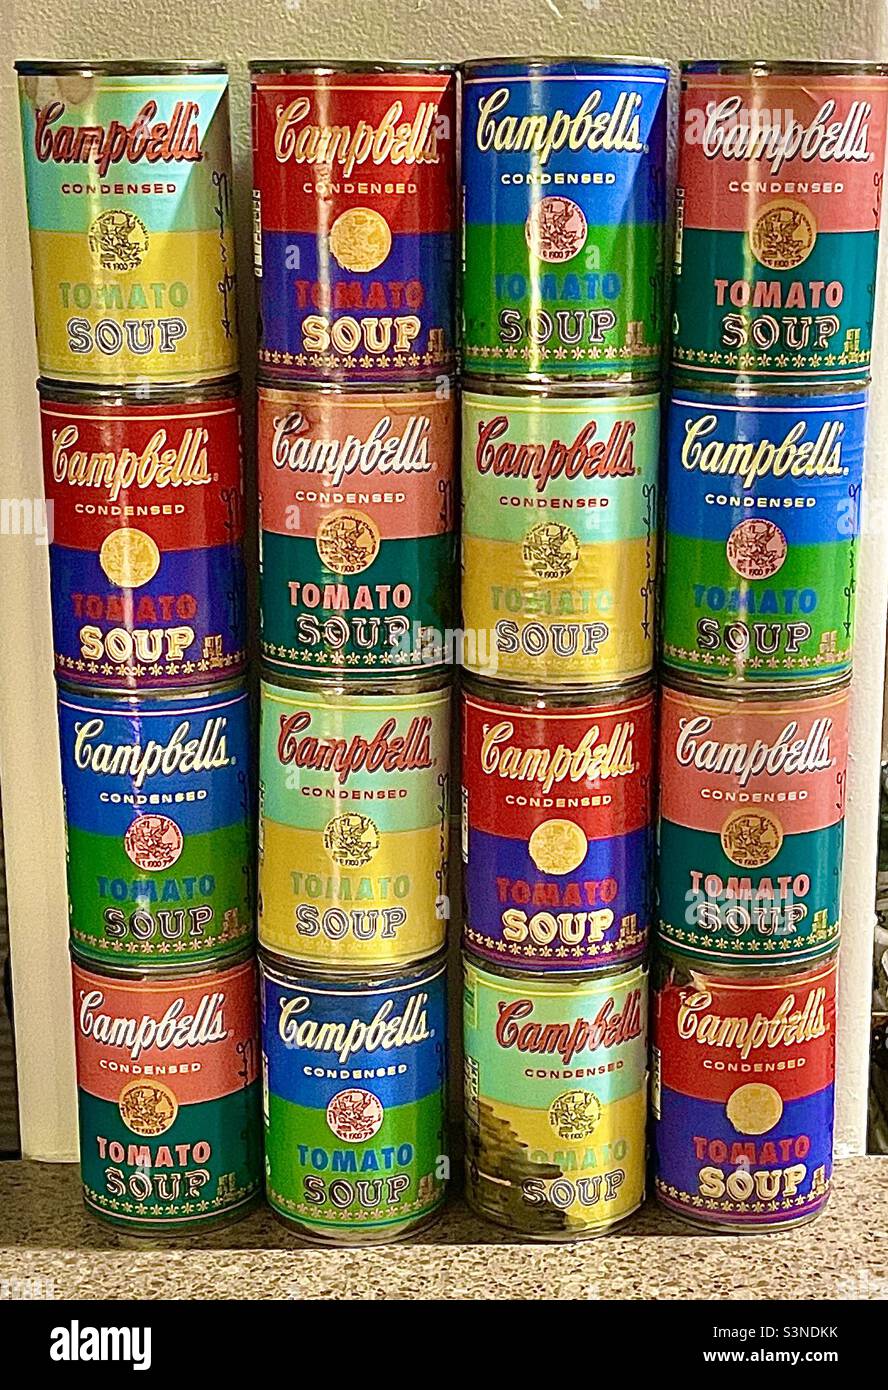 Eine etwas abgenutzte Sammlung/Ausstellung von einem Dutzend Campbell-Suppendosen im Warhol-Stil, ungeöffnet und mit Suppe gefüllt. Die Dosen wurden speziell als Warhol-Erinnerungsstücke aus der Popkunst gemustert und verkauft Stockfoto